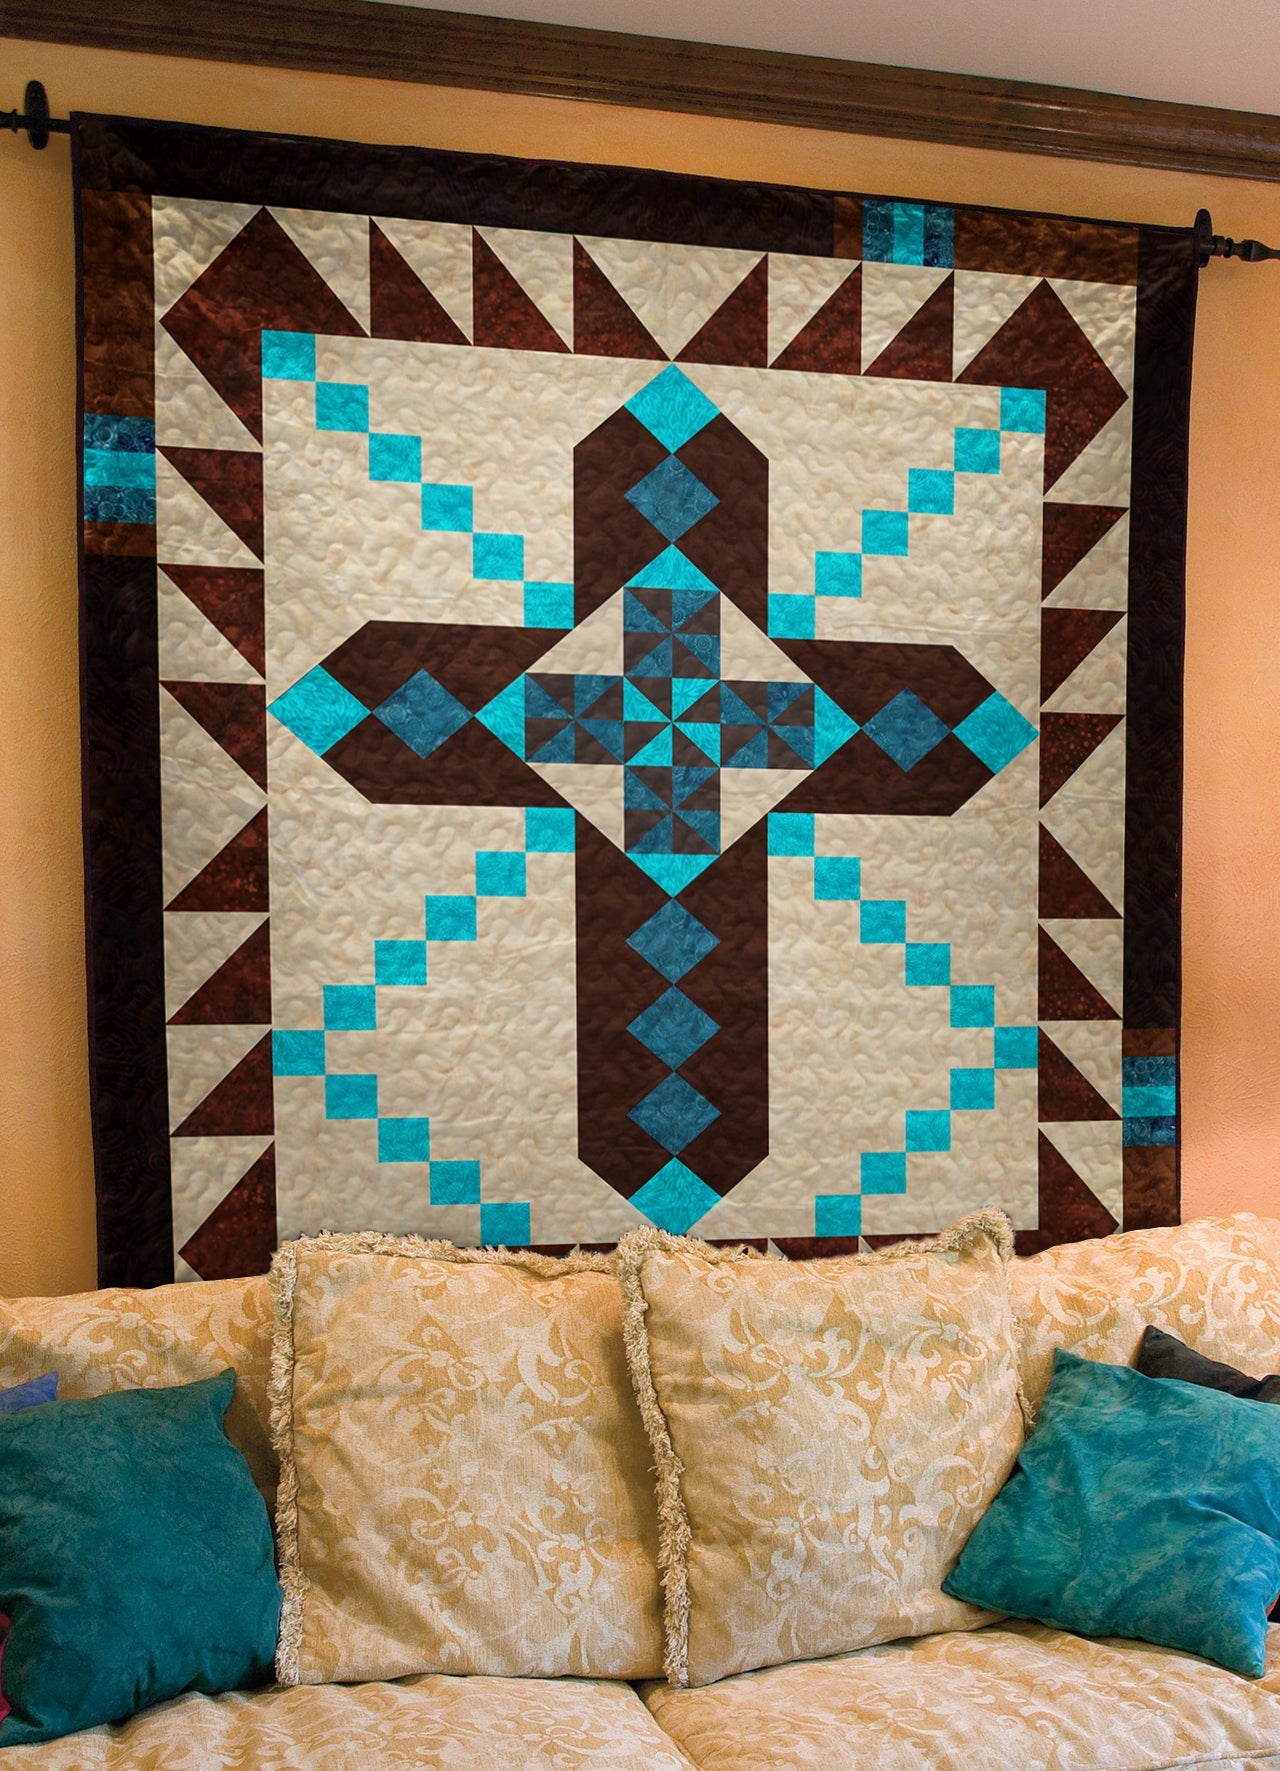 Native American Inspired Christian Cross Art Quilt HN060606M